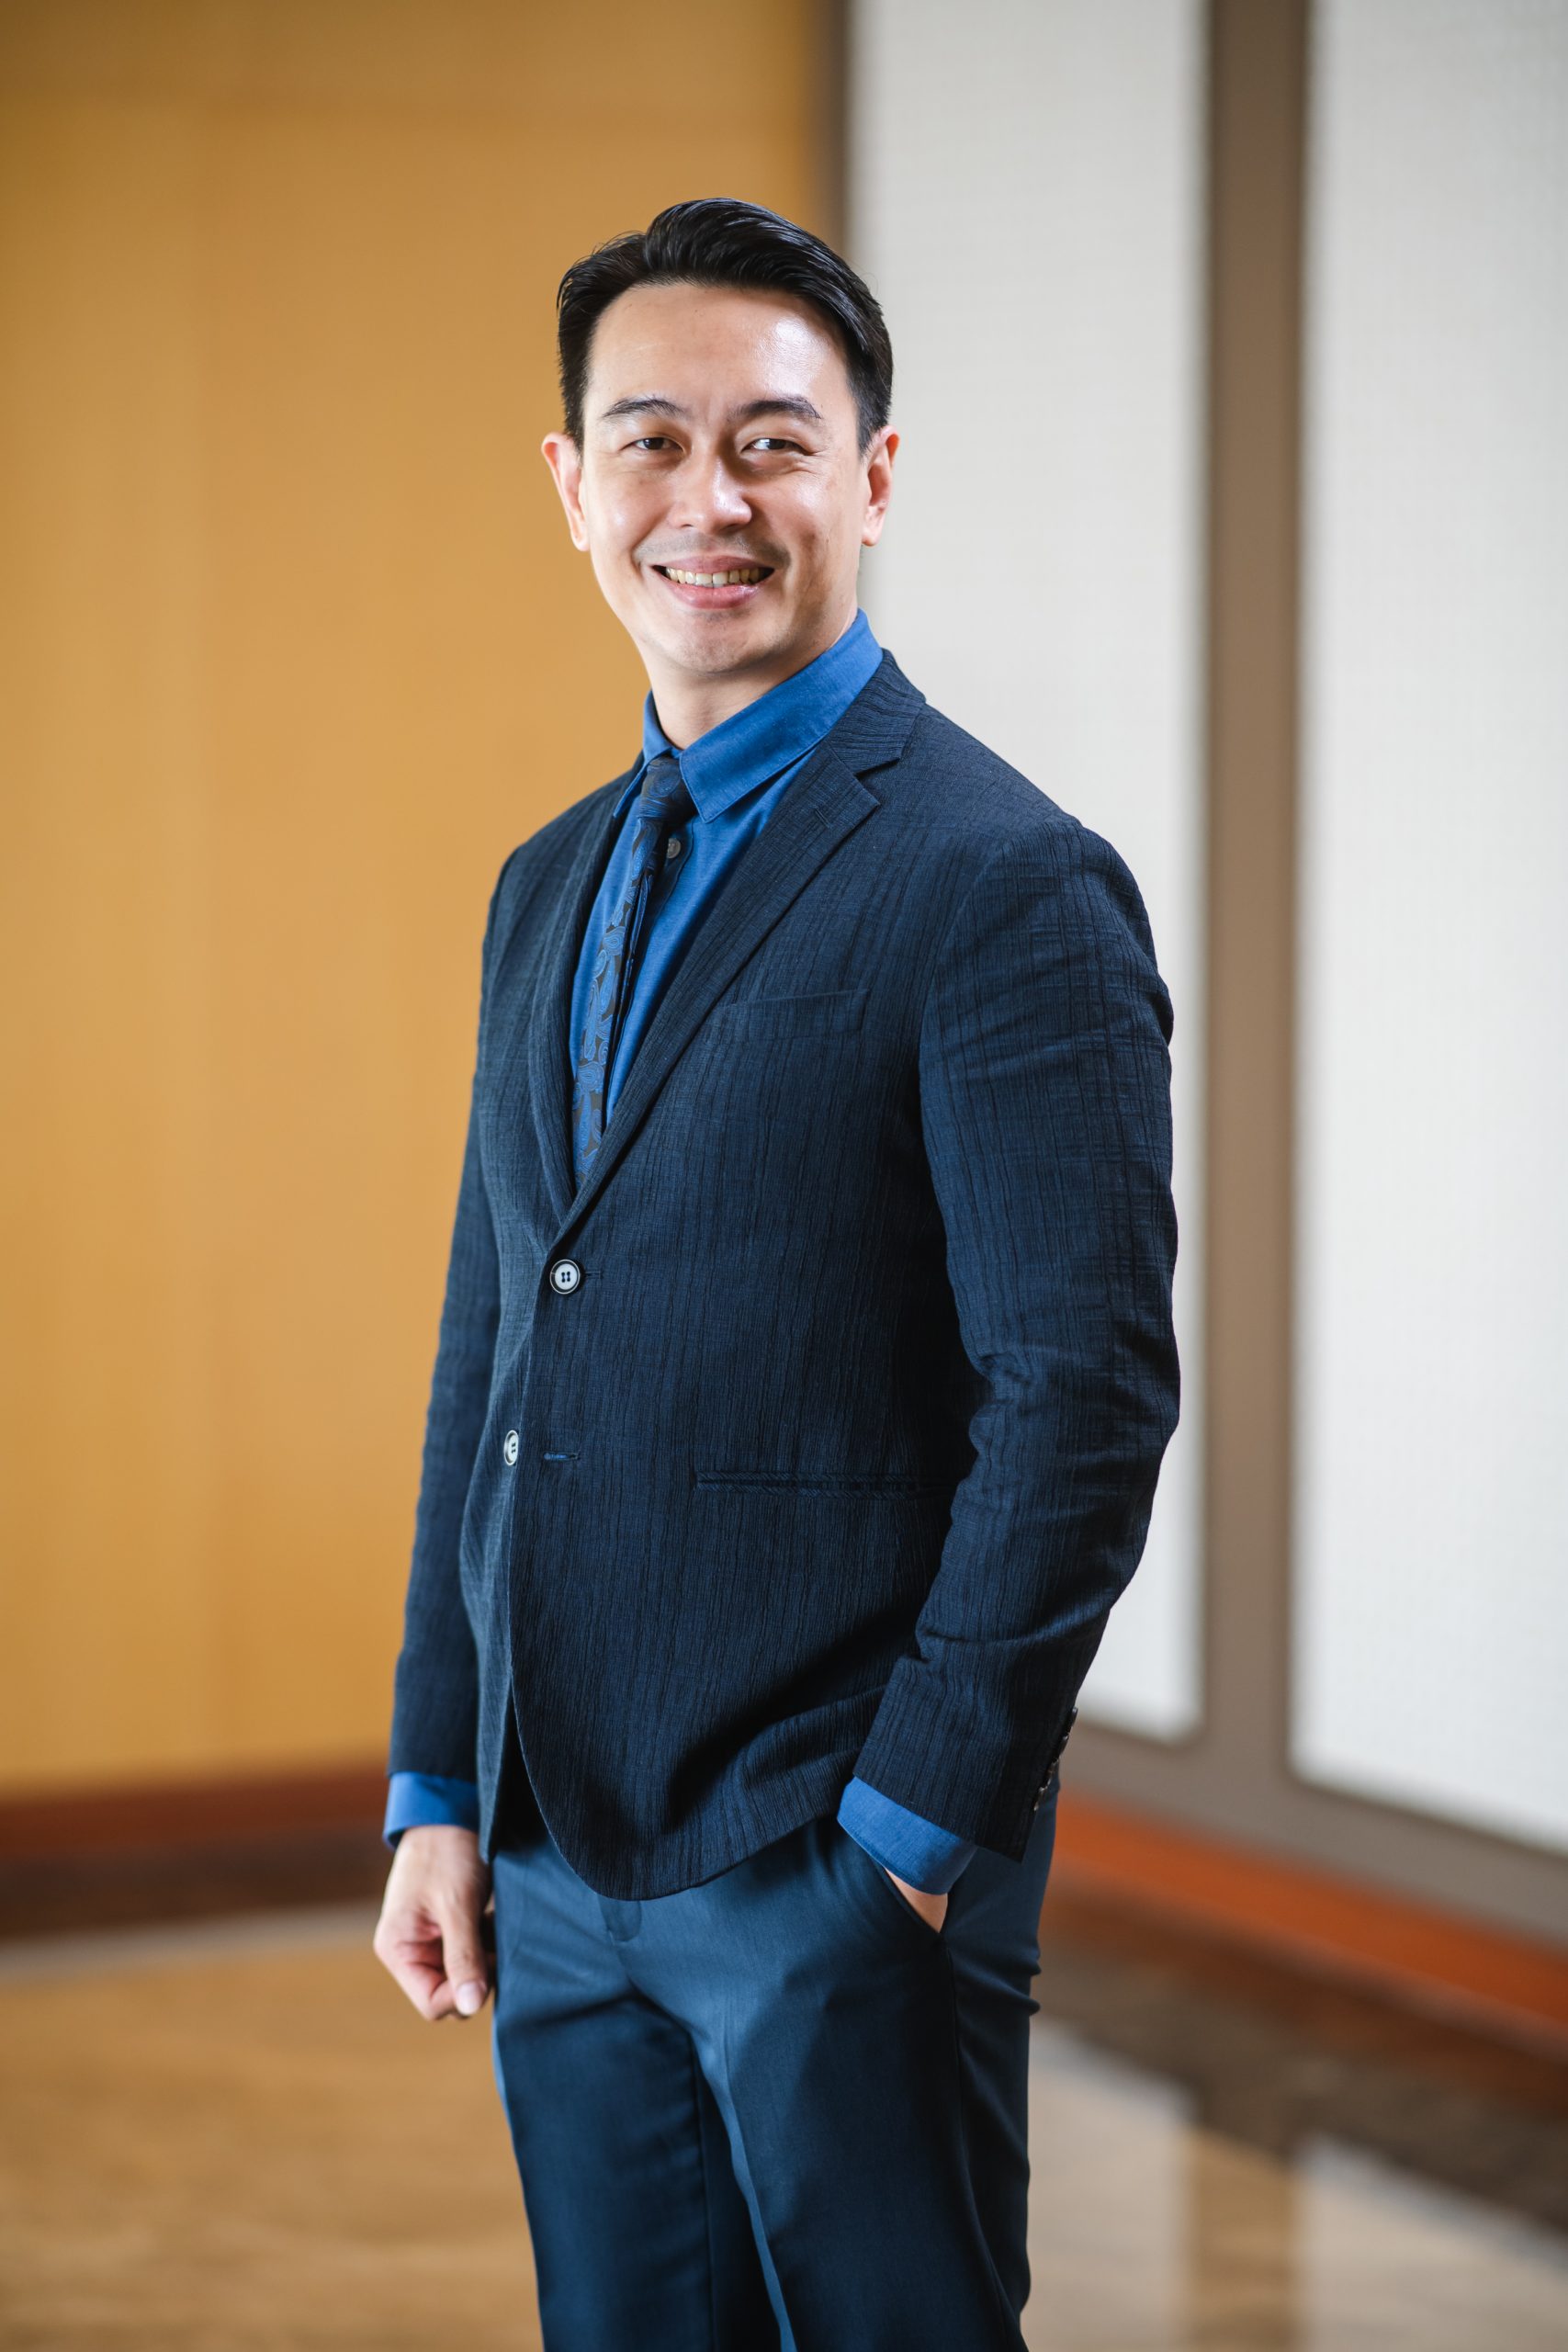 Bernard Pang Apex Group Singapore | Bernard Pang Financial Services Associate Director